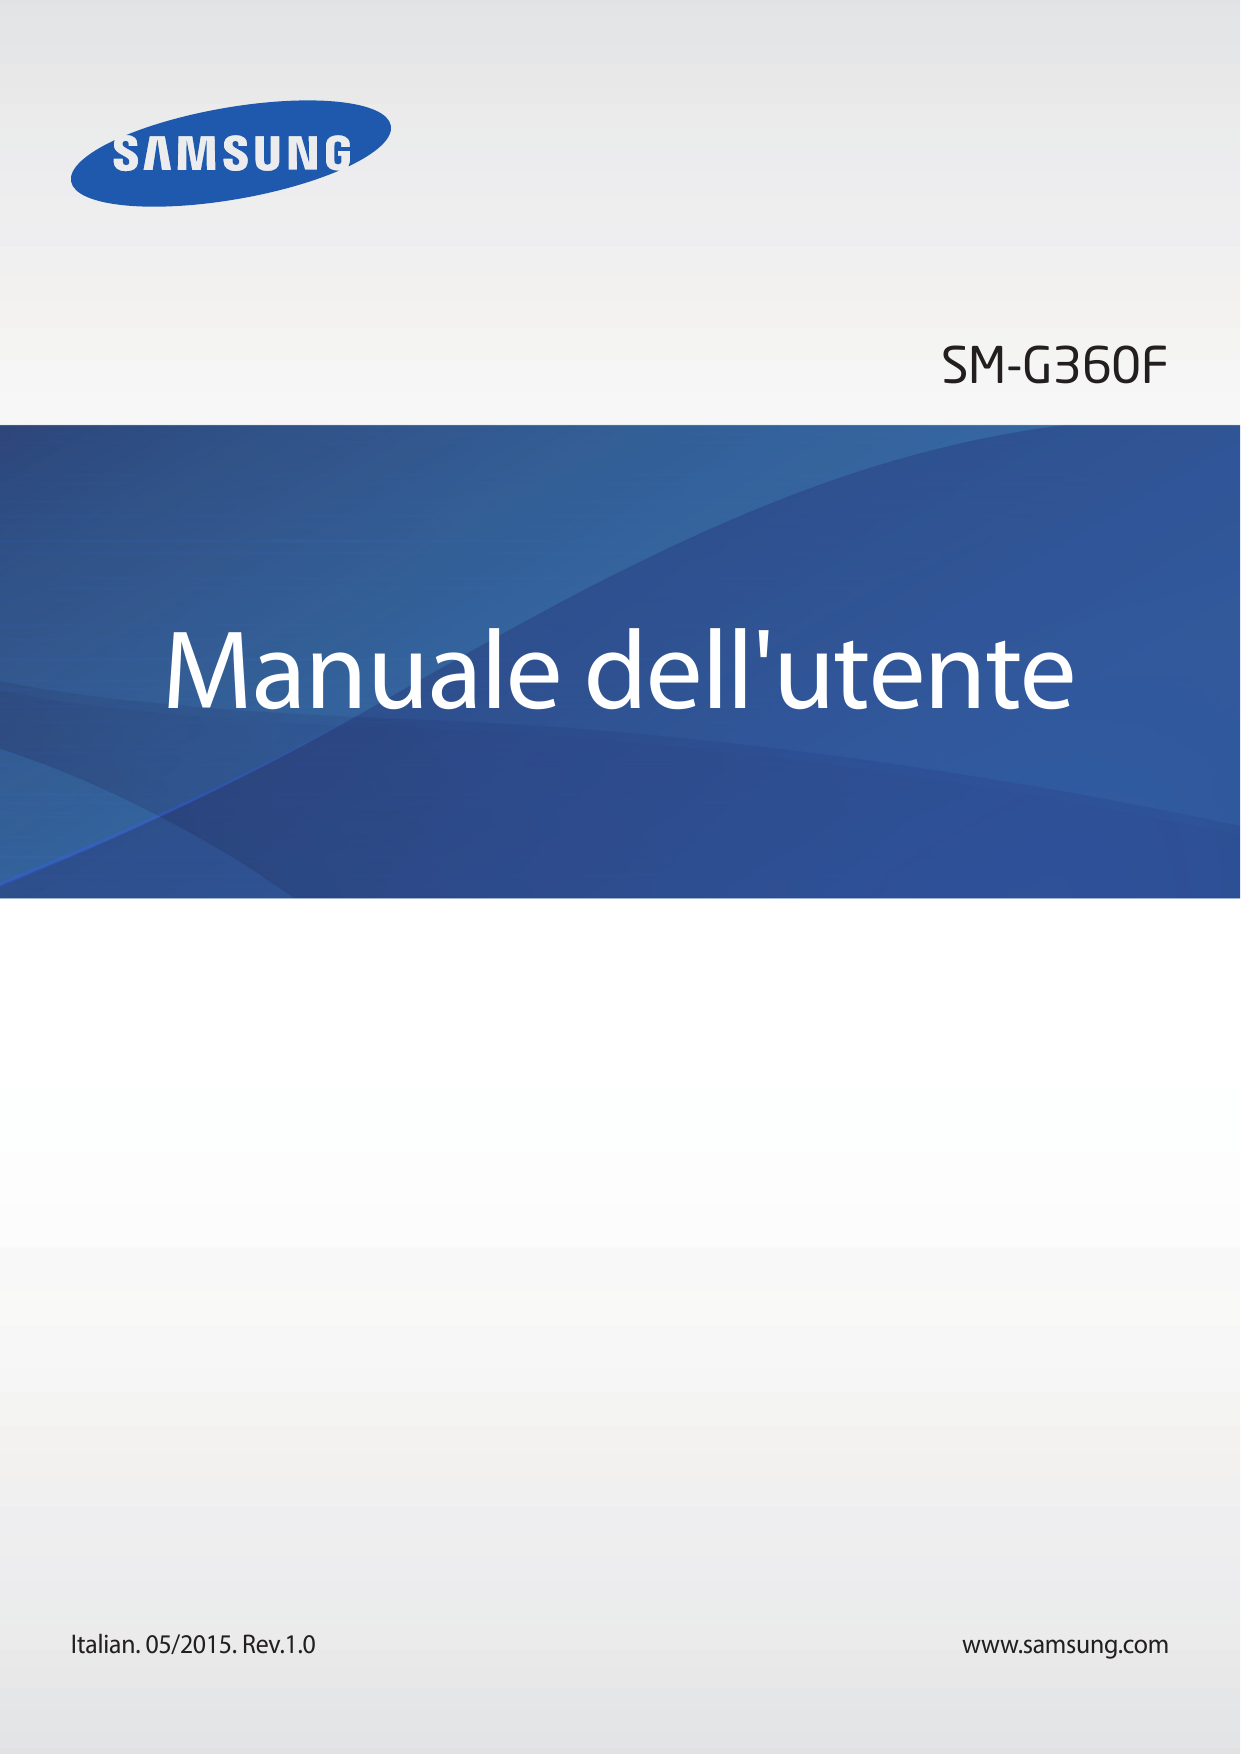 SM-G360FManuale dell'utenteItalian. 05/2015. Rev.1.0www.samsung.com